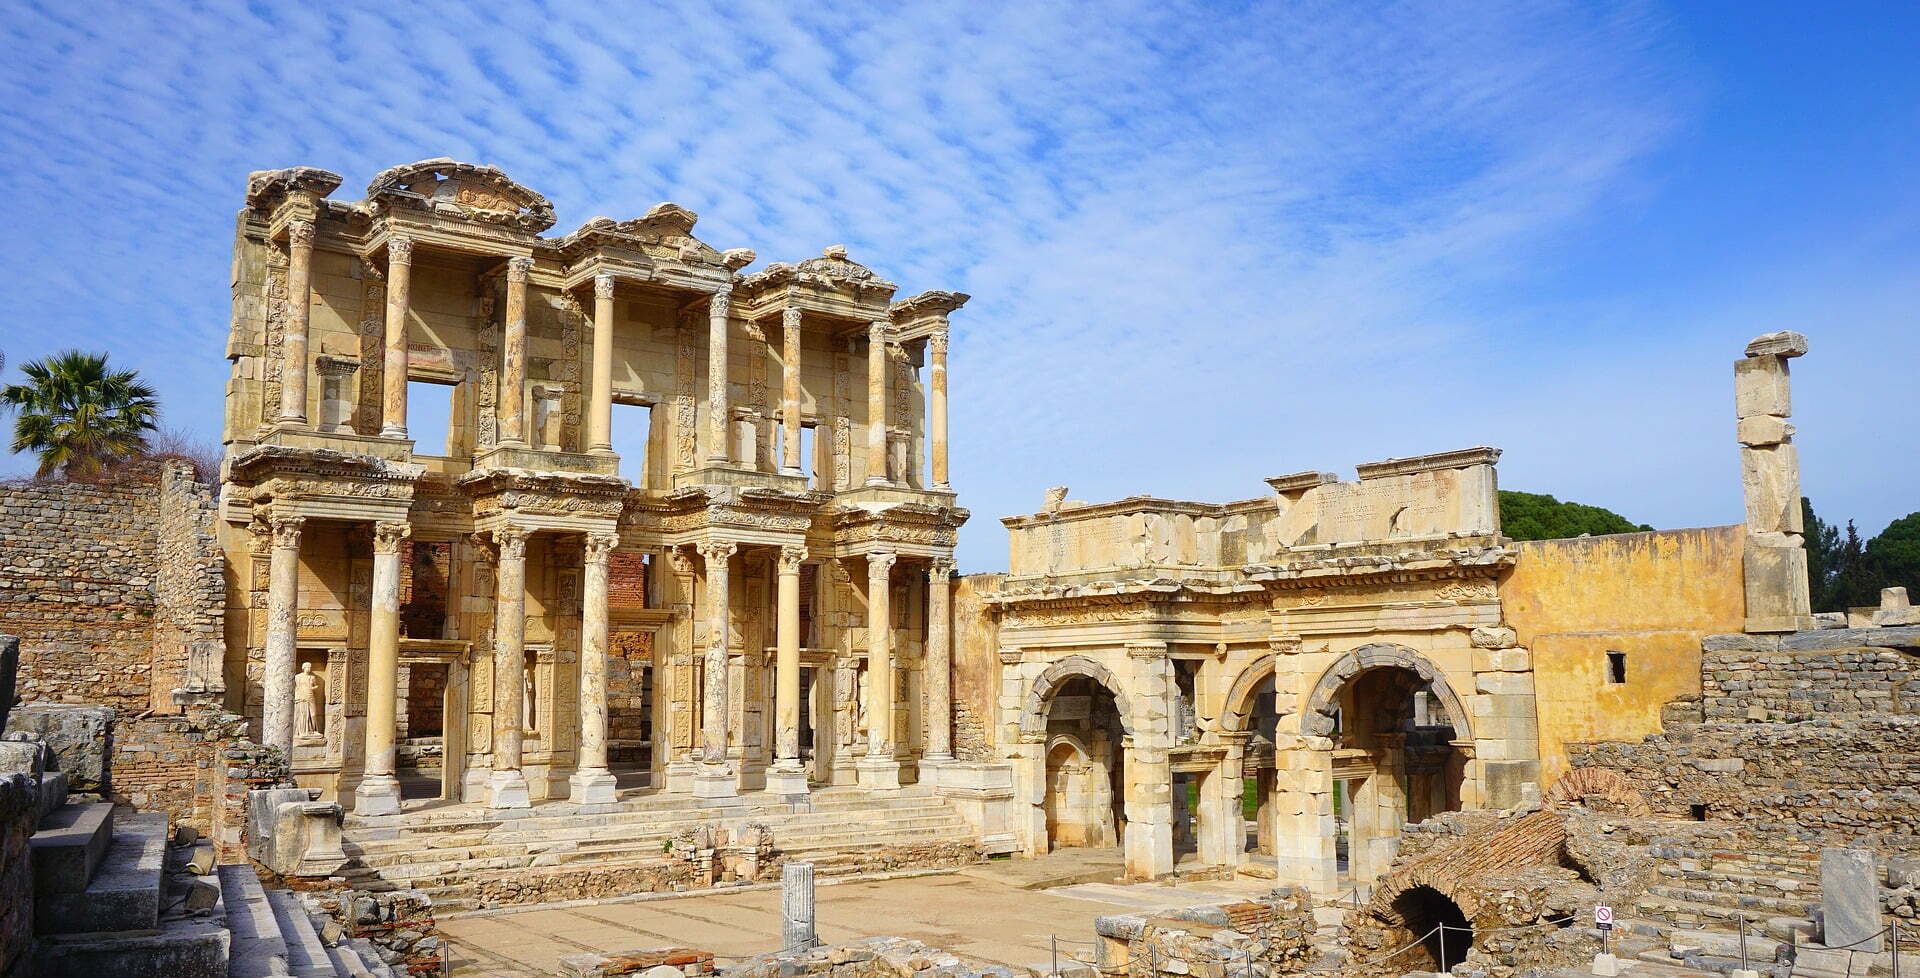 รูปภาพ : เที่ยวตุรกี อิสตันบูล เมืองโบราณเอฟฟิซุส (City of Ephesus)